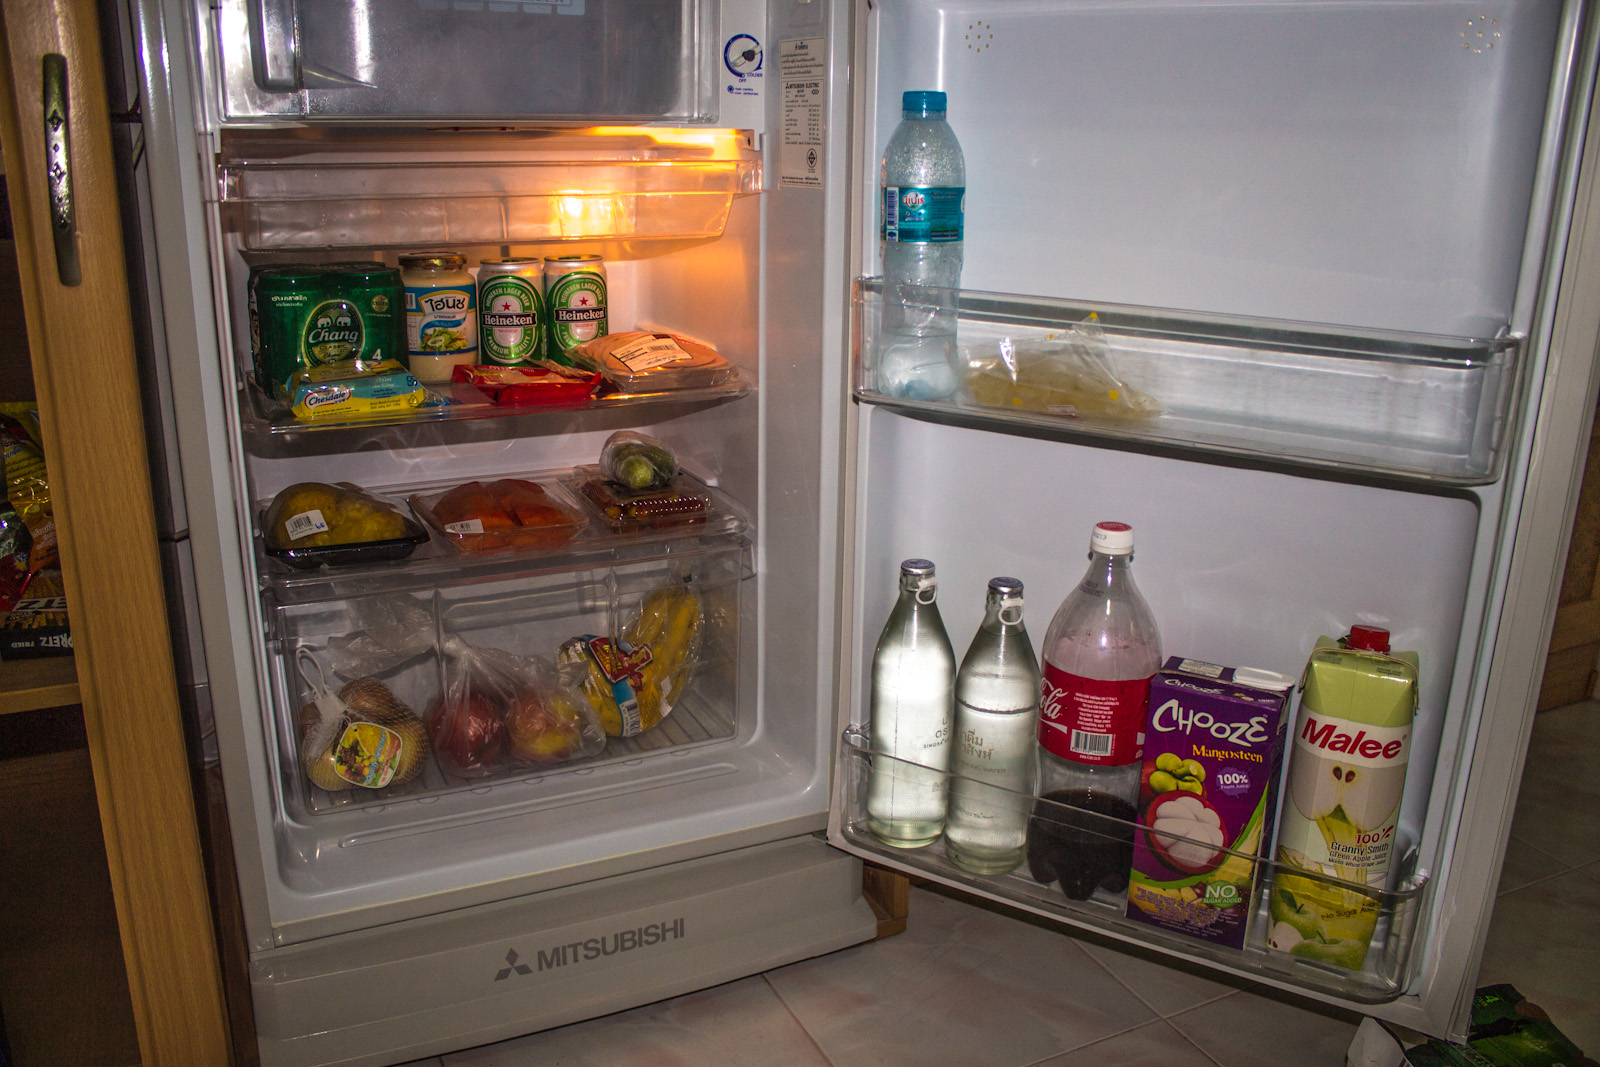 Холодильник с едой